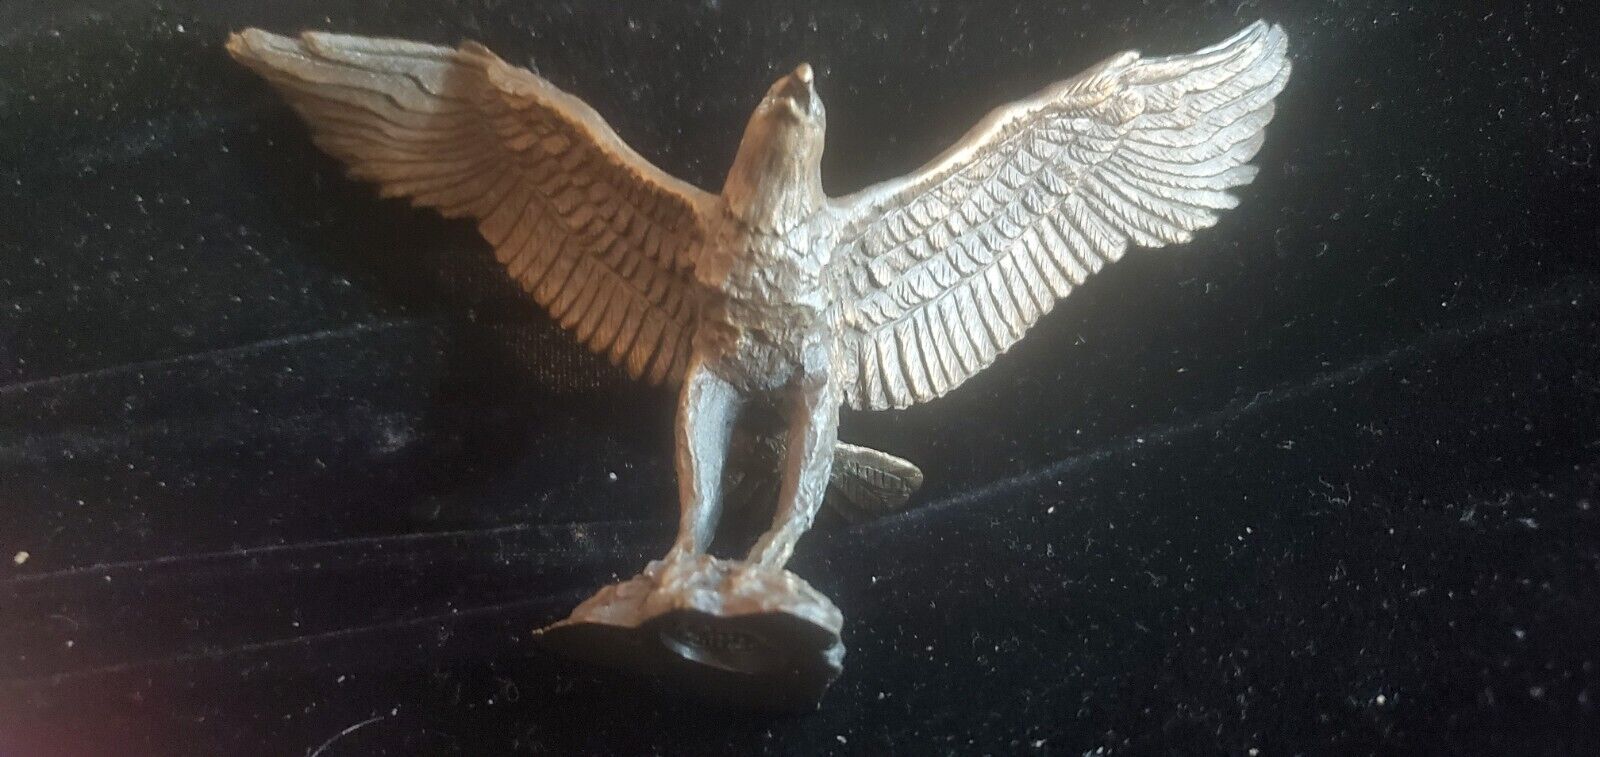 Bronze Avon 1985 Eagle sculpture Figurine America Source Of Fine Collectible